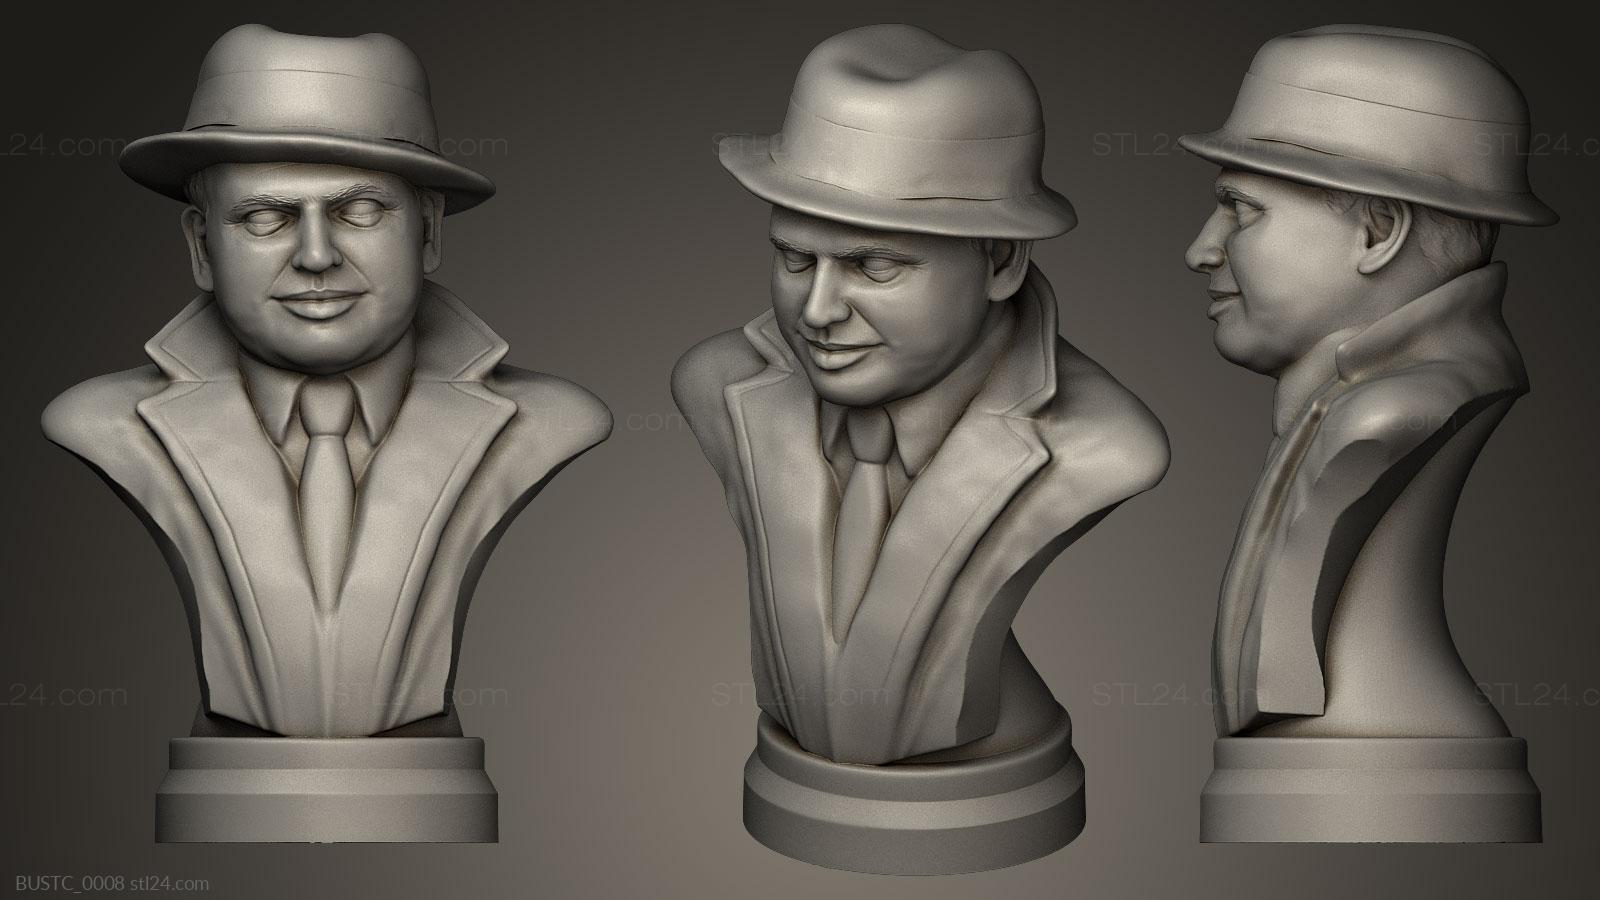 Бюсты и барельефы известных личностей (Аль Капоне, BUSTC_0008) 3D модель для ЧПУ станка